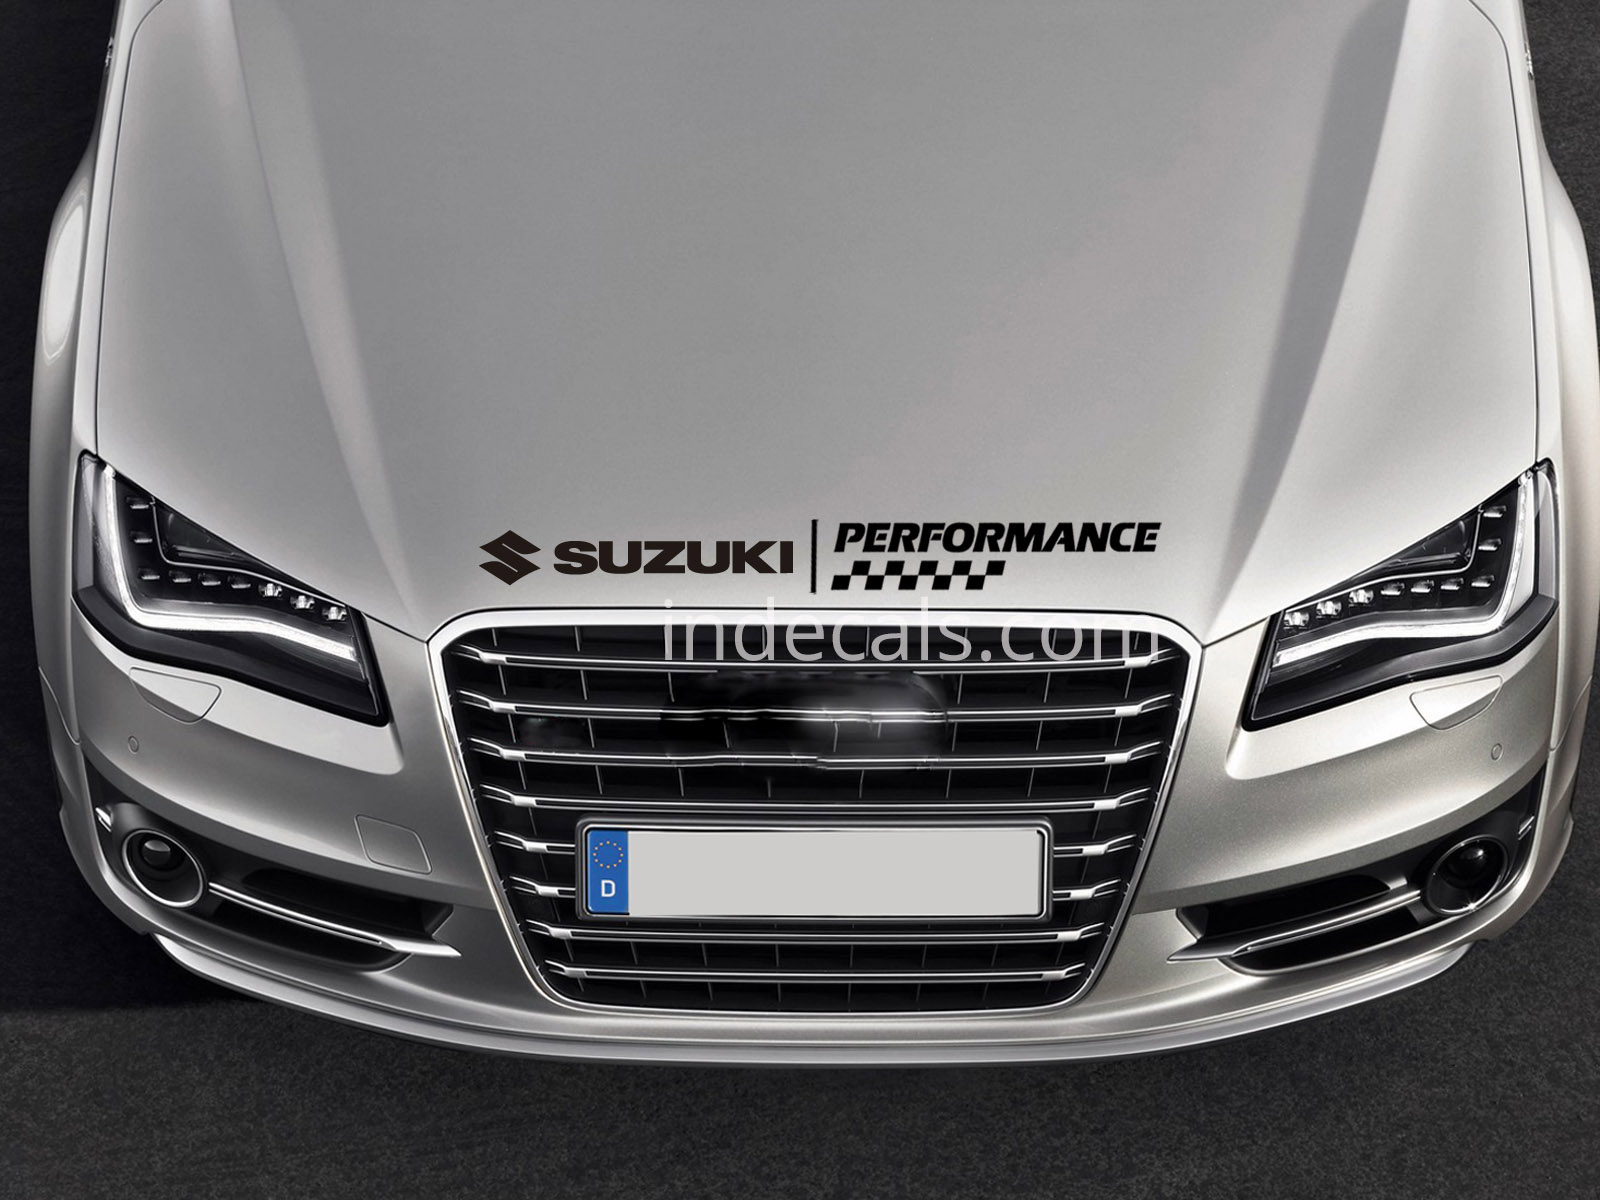 1 x Suzuki Performance Sticker for Bonnet - Black